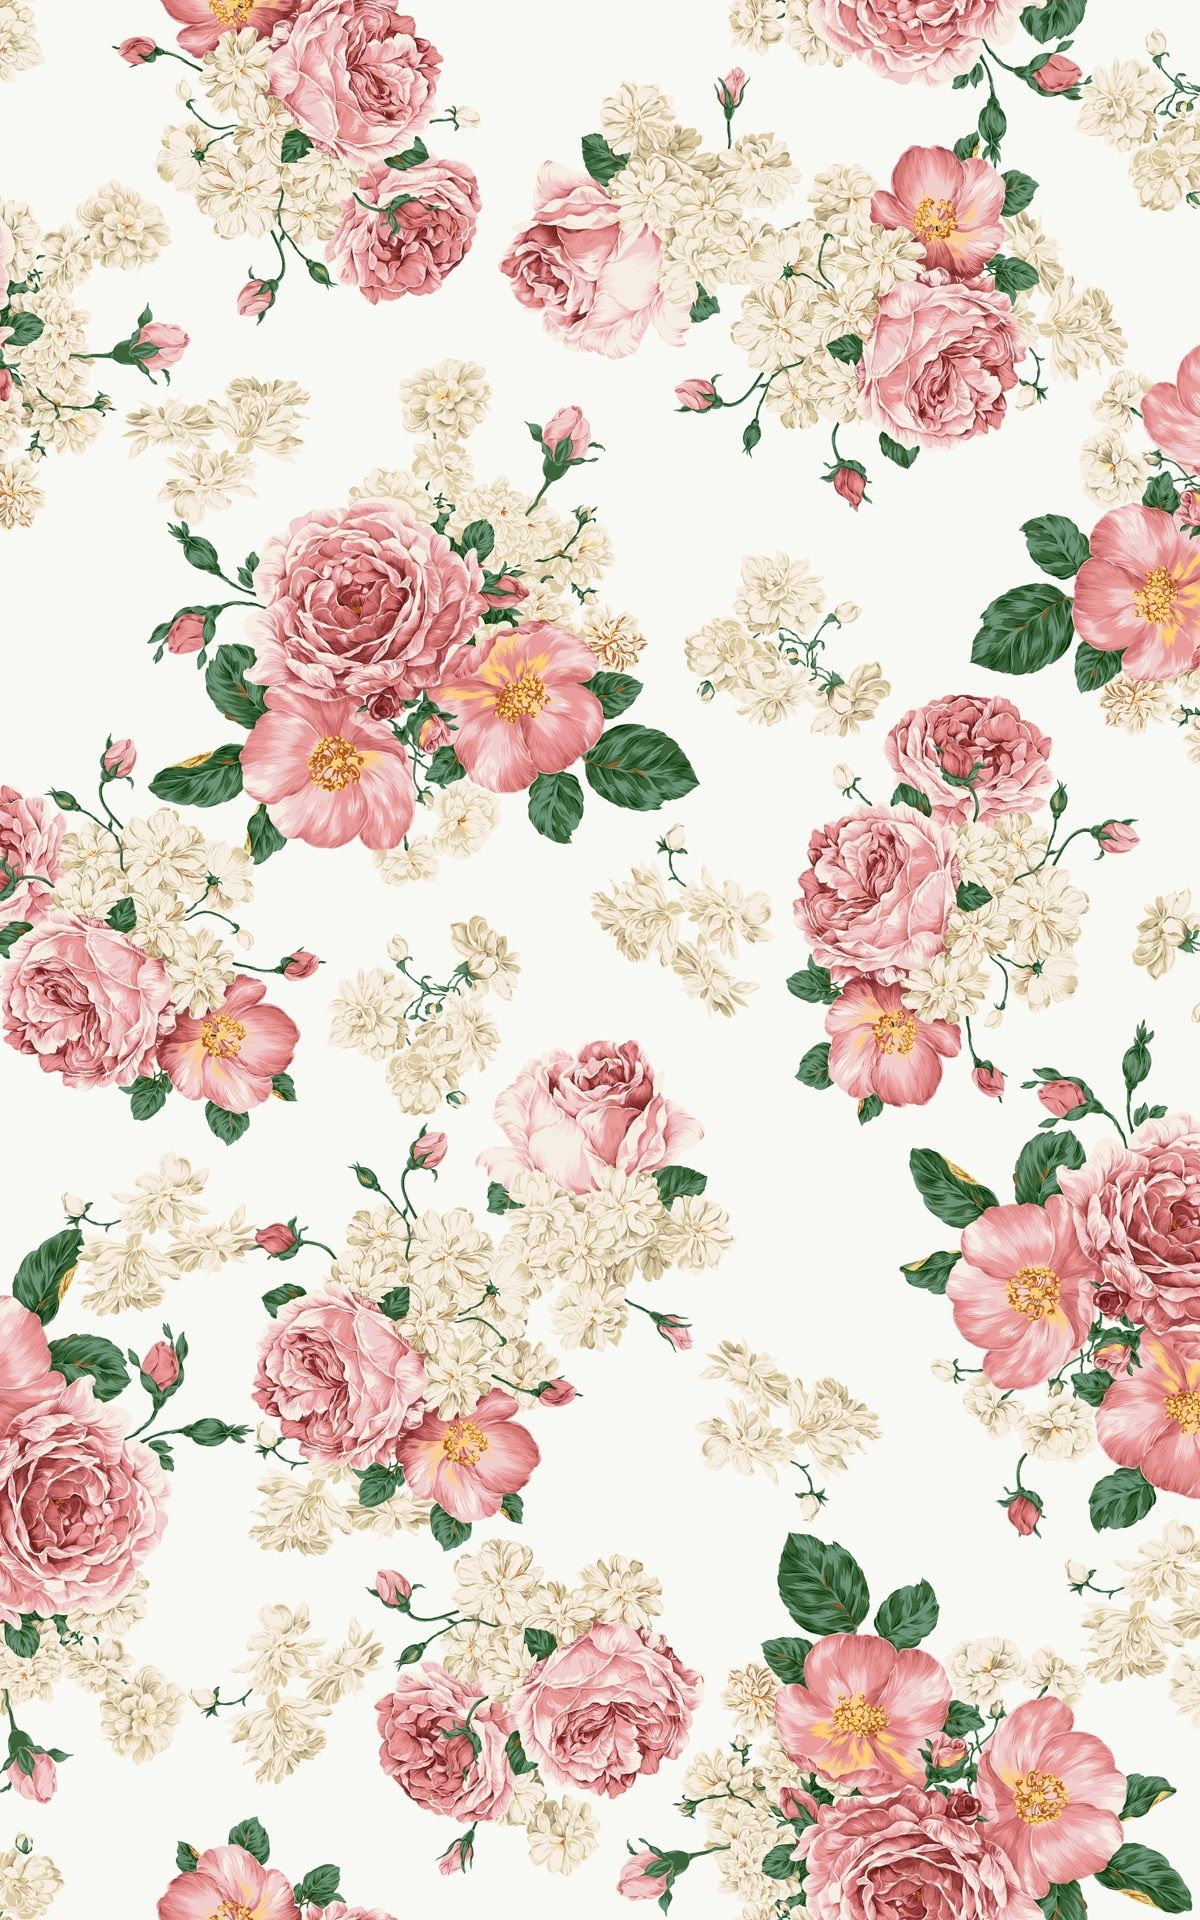 10 Latest Flowers Tumblr Wallpaper FULL HD 1080p For PC Desktop